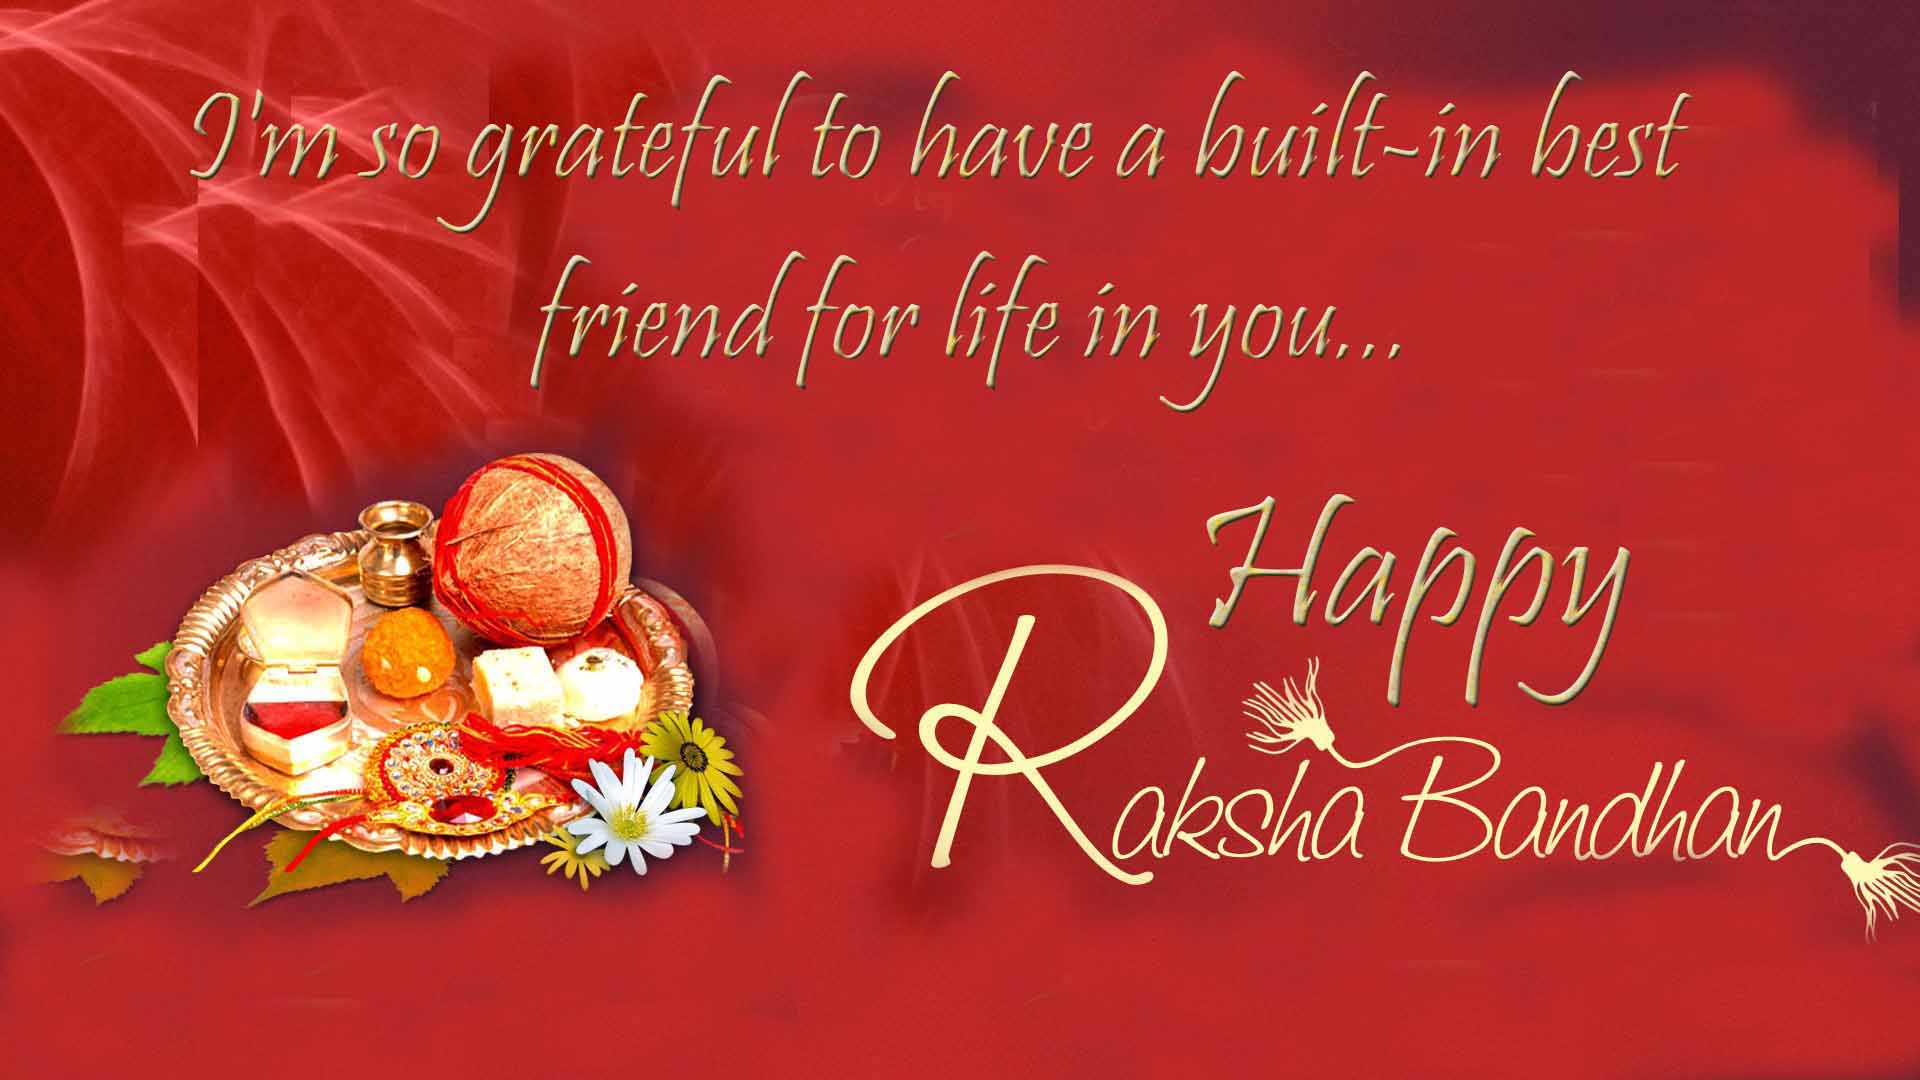 raksha bandhan wishes 2018 image